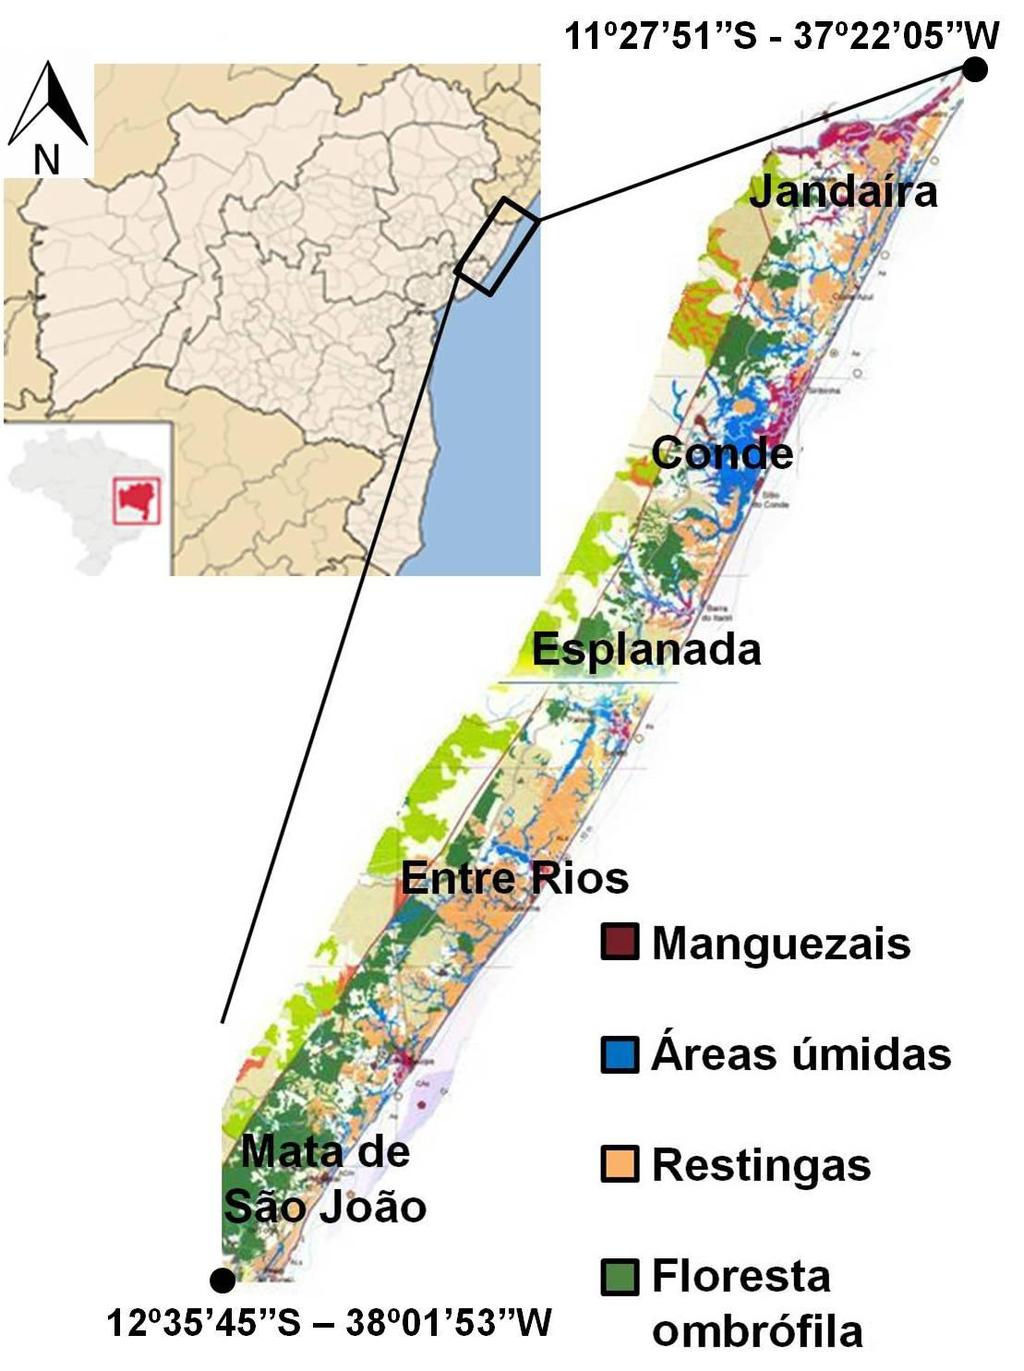 24 Figura 1 Mapa da vegetação do litoral norte da APALN. Fonte: Companhia de Desenvolvimento Urbano do Estado da Bahia (2001) [7].